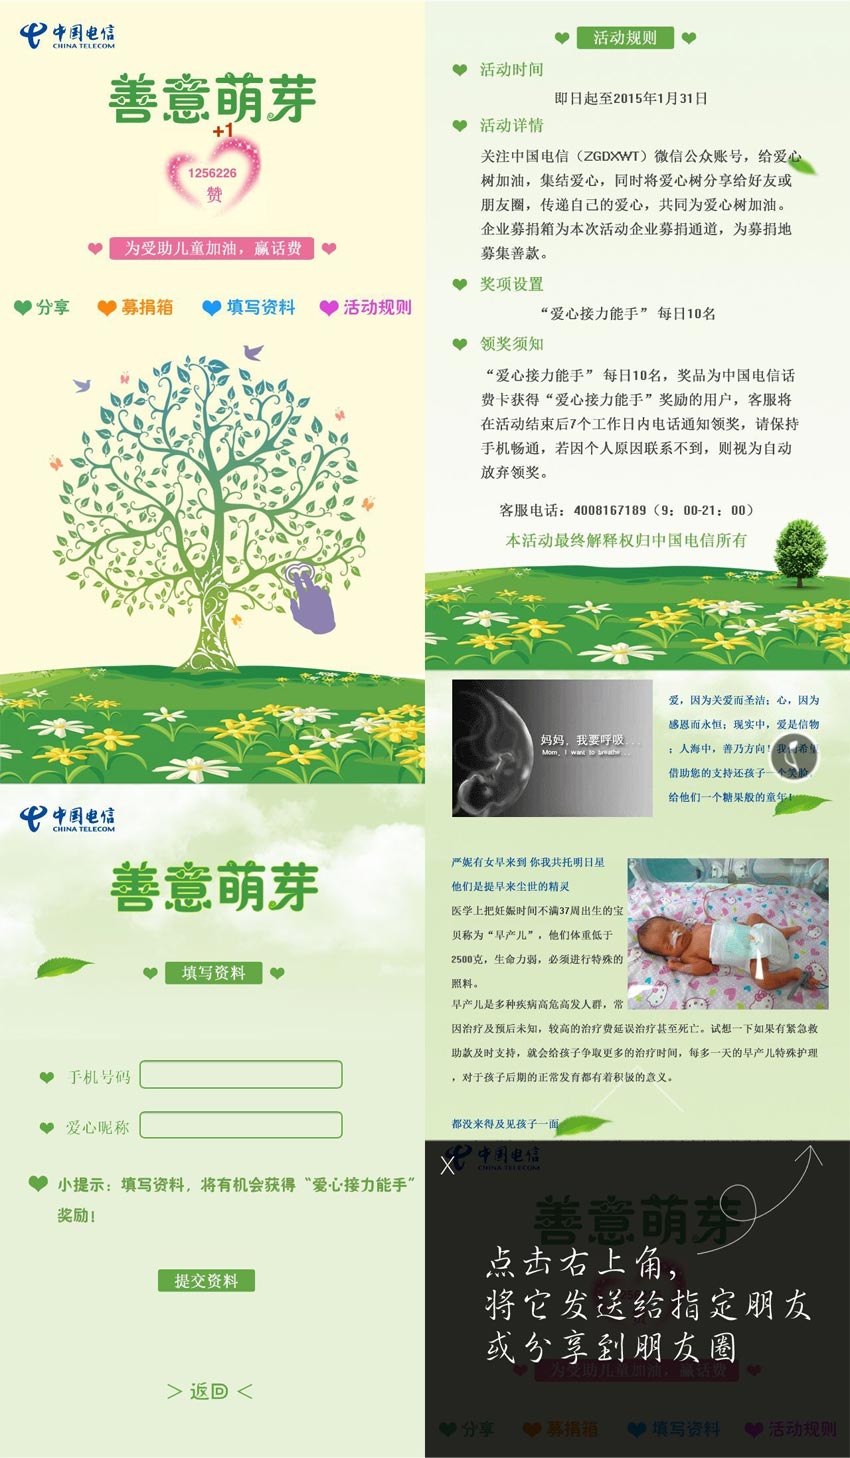 中国电信爱心树活动微信专题模板html下载